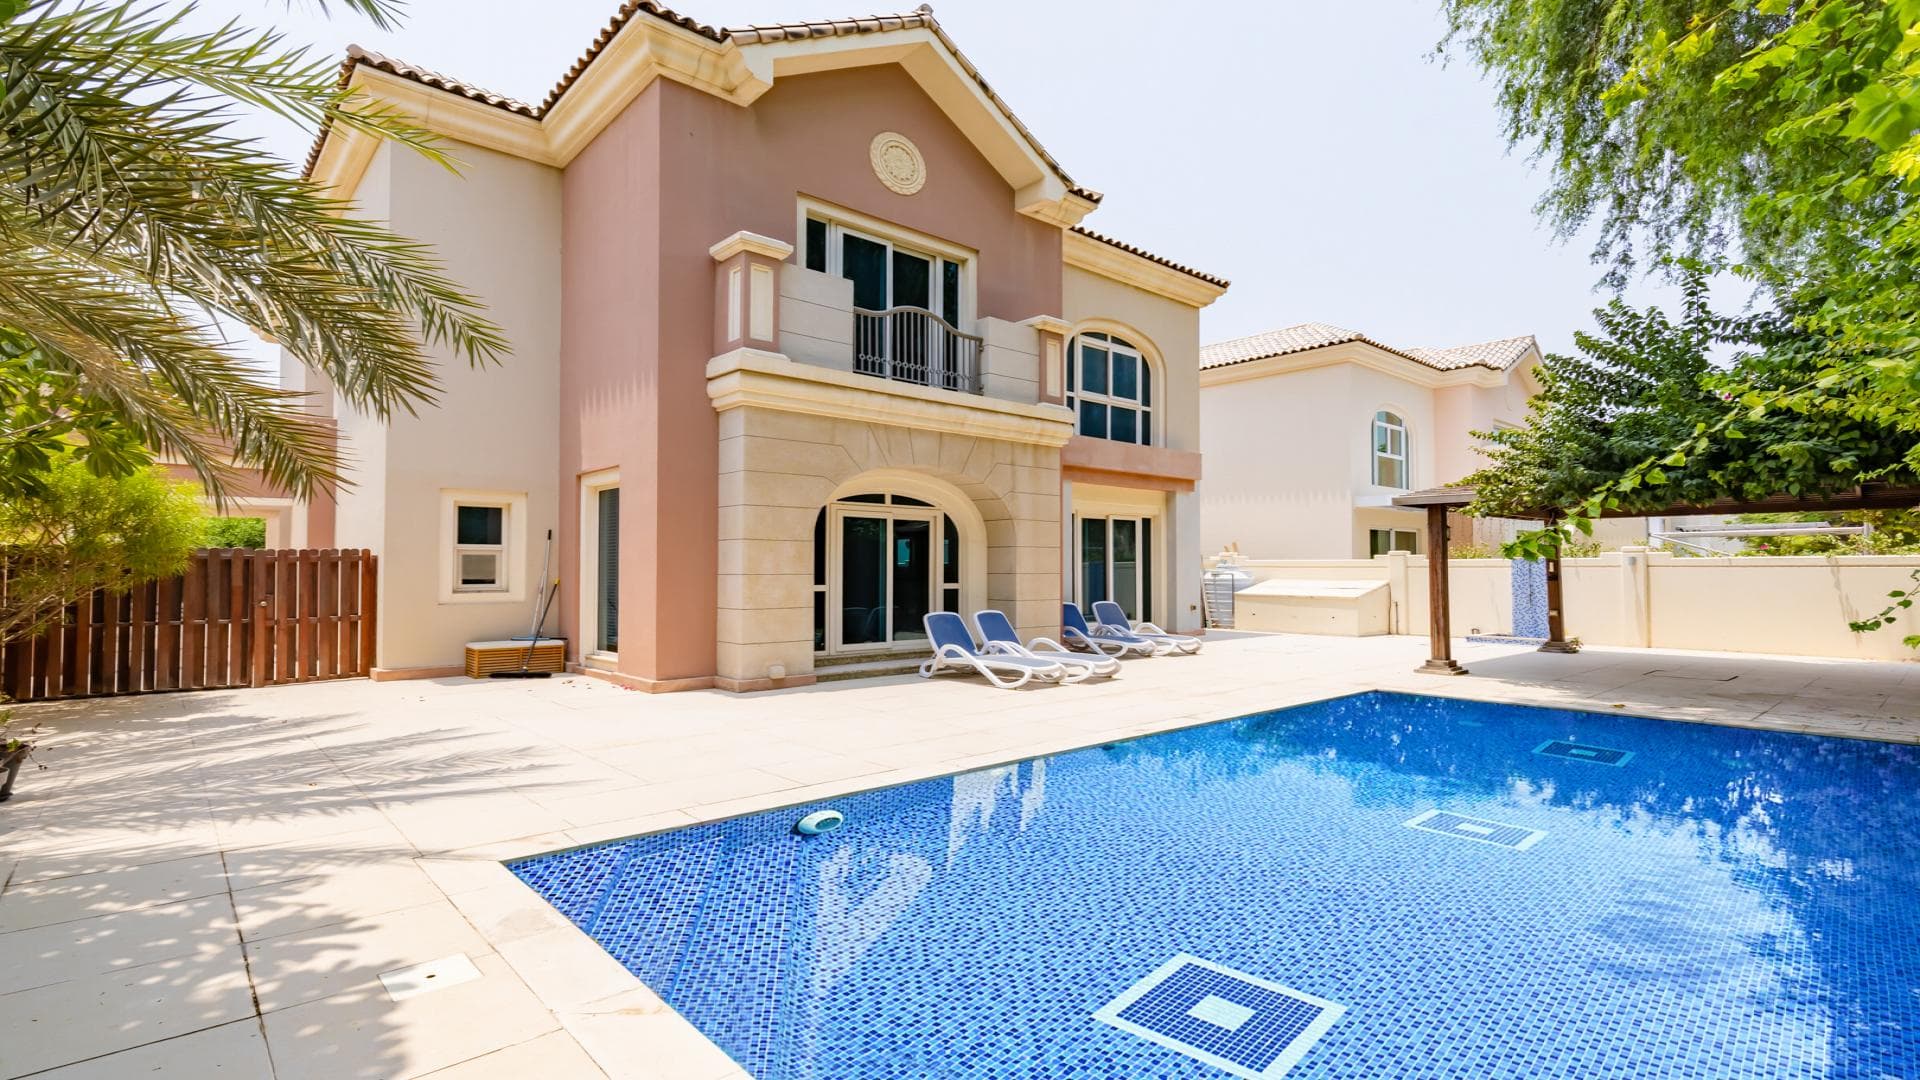 5 Bedroom Villa For Rent Al Thamam 35 Lp36332 163e63d313e5f100.jpg